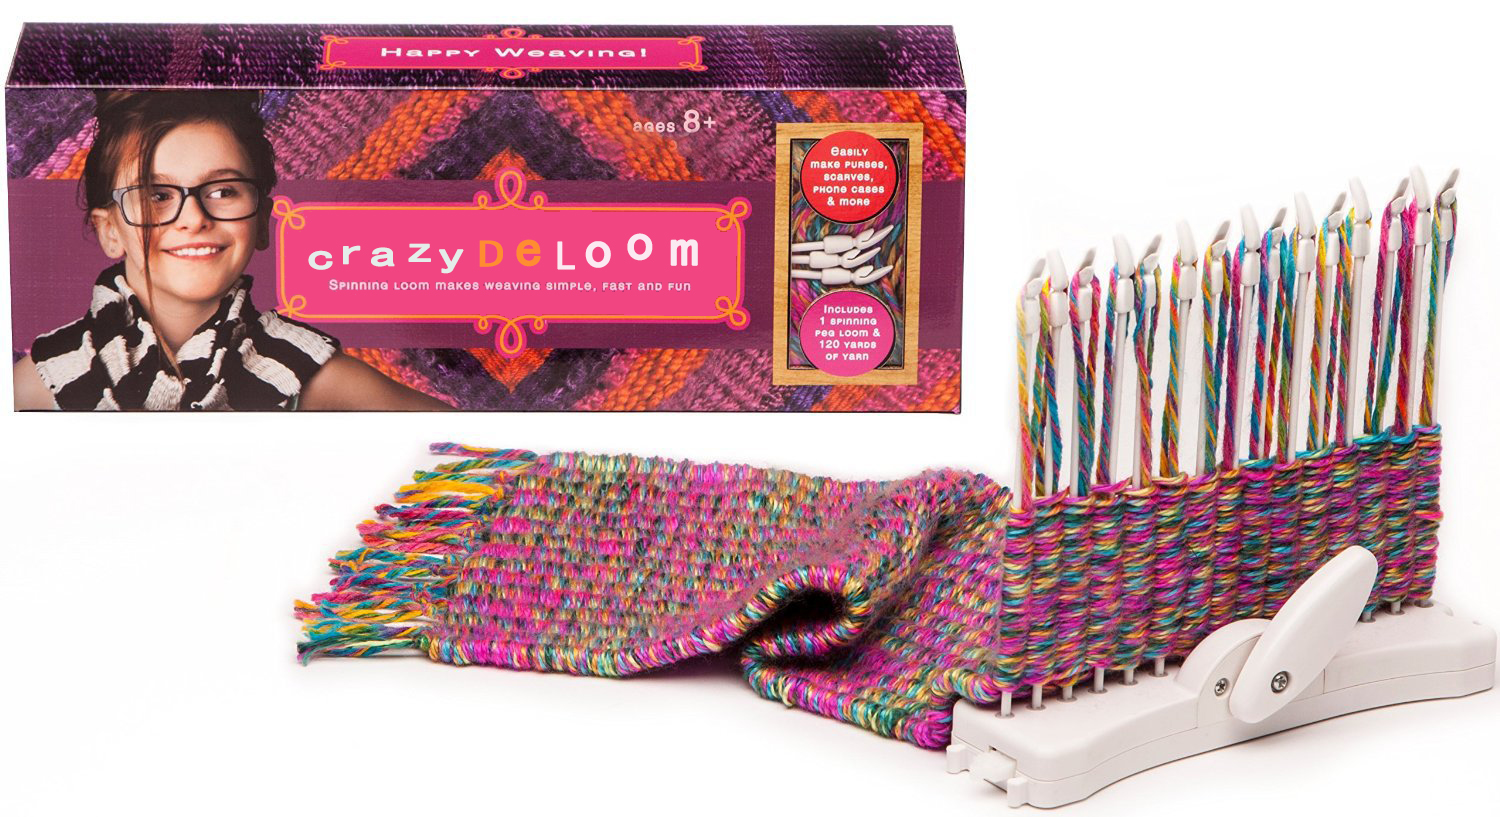 供应用于编织包包等的手工DIY创意织机彩虹编织器图片